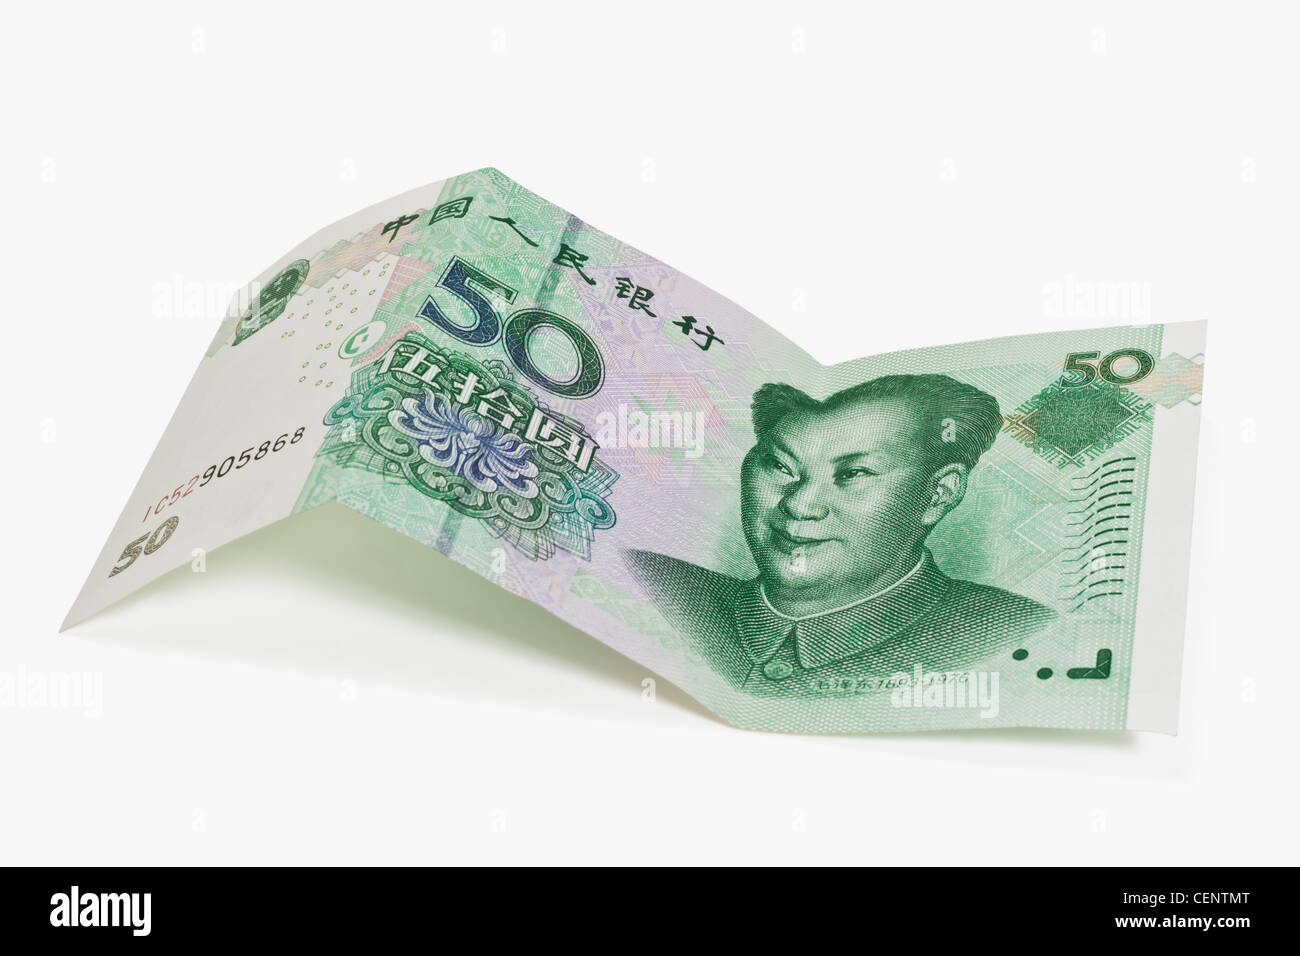 Le projet de loi 50 yuan avec le portrait de Mao Zedong. Le renminbi, la monnaie chinoise, a été introduit en 1949. Banque D'Images